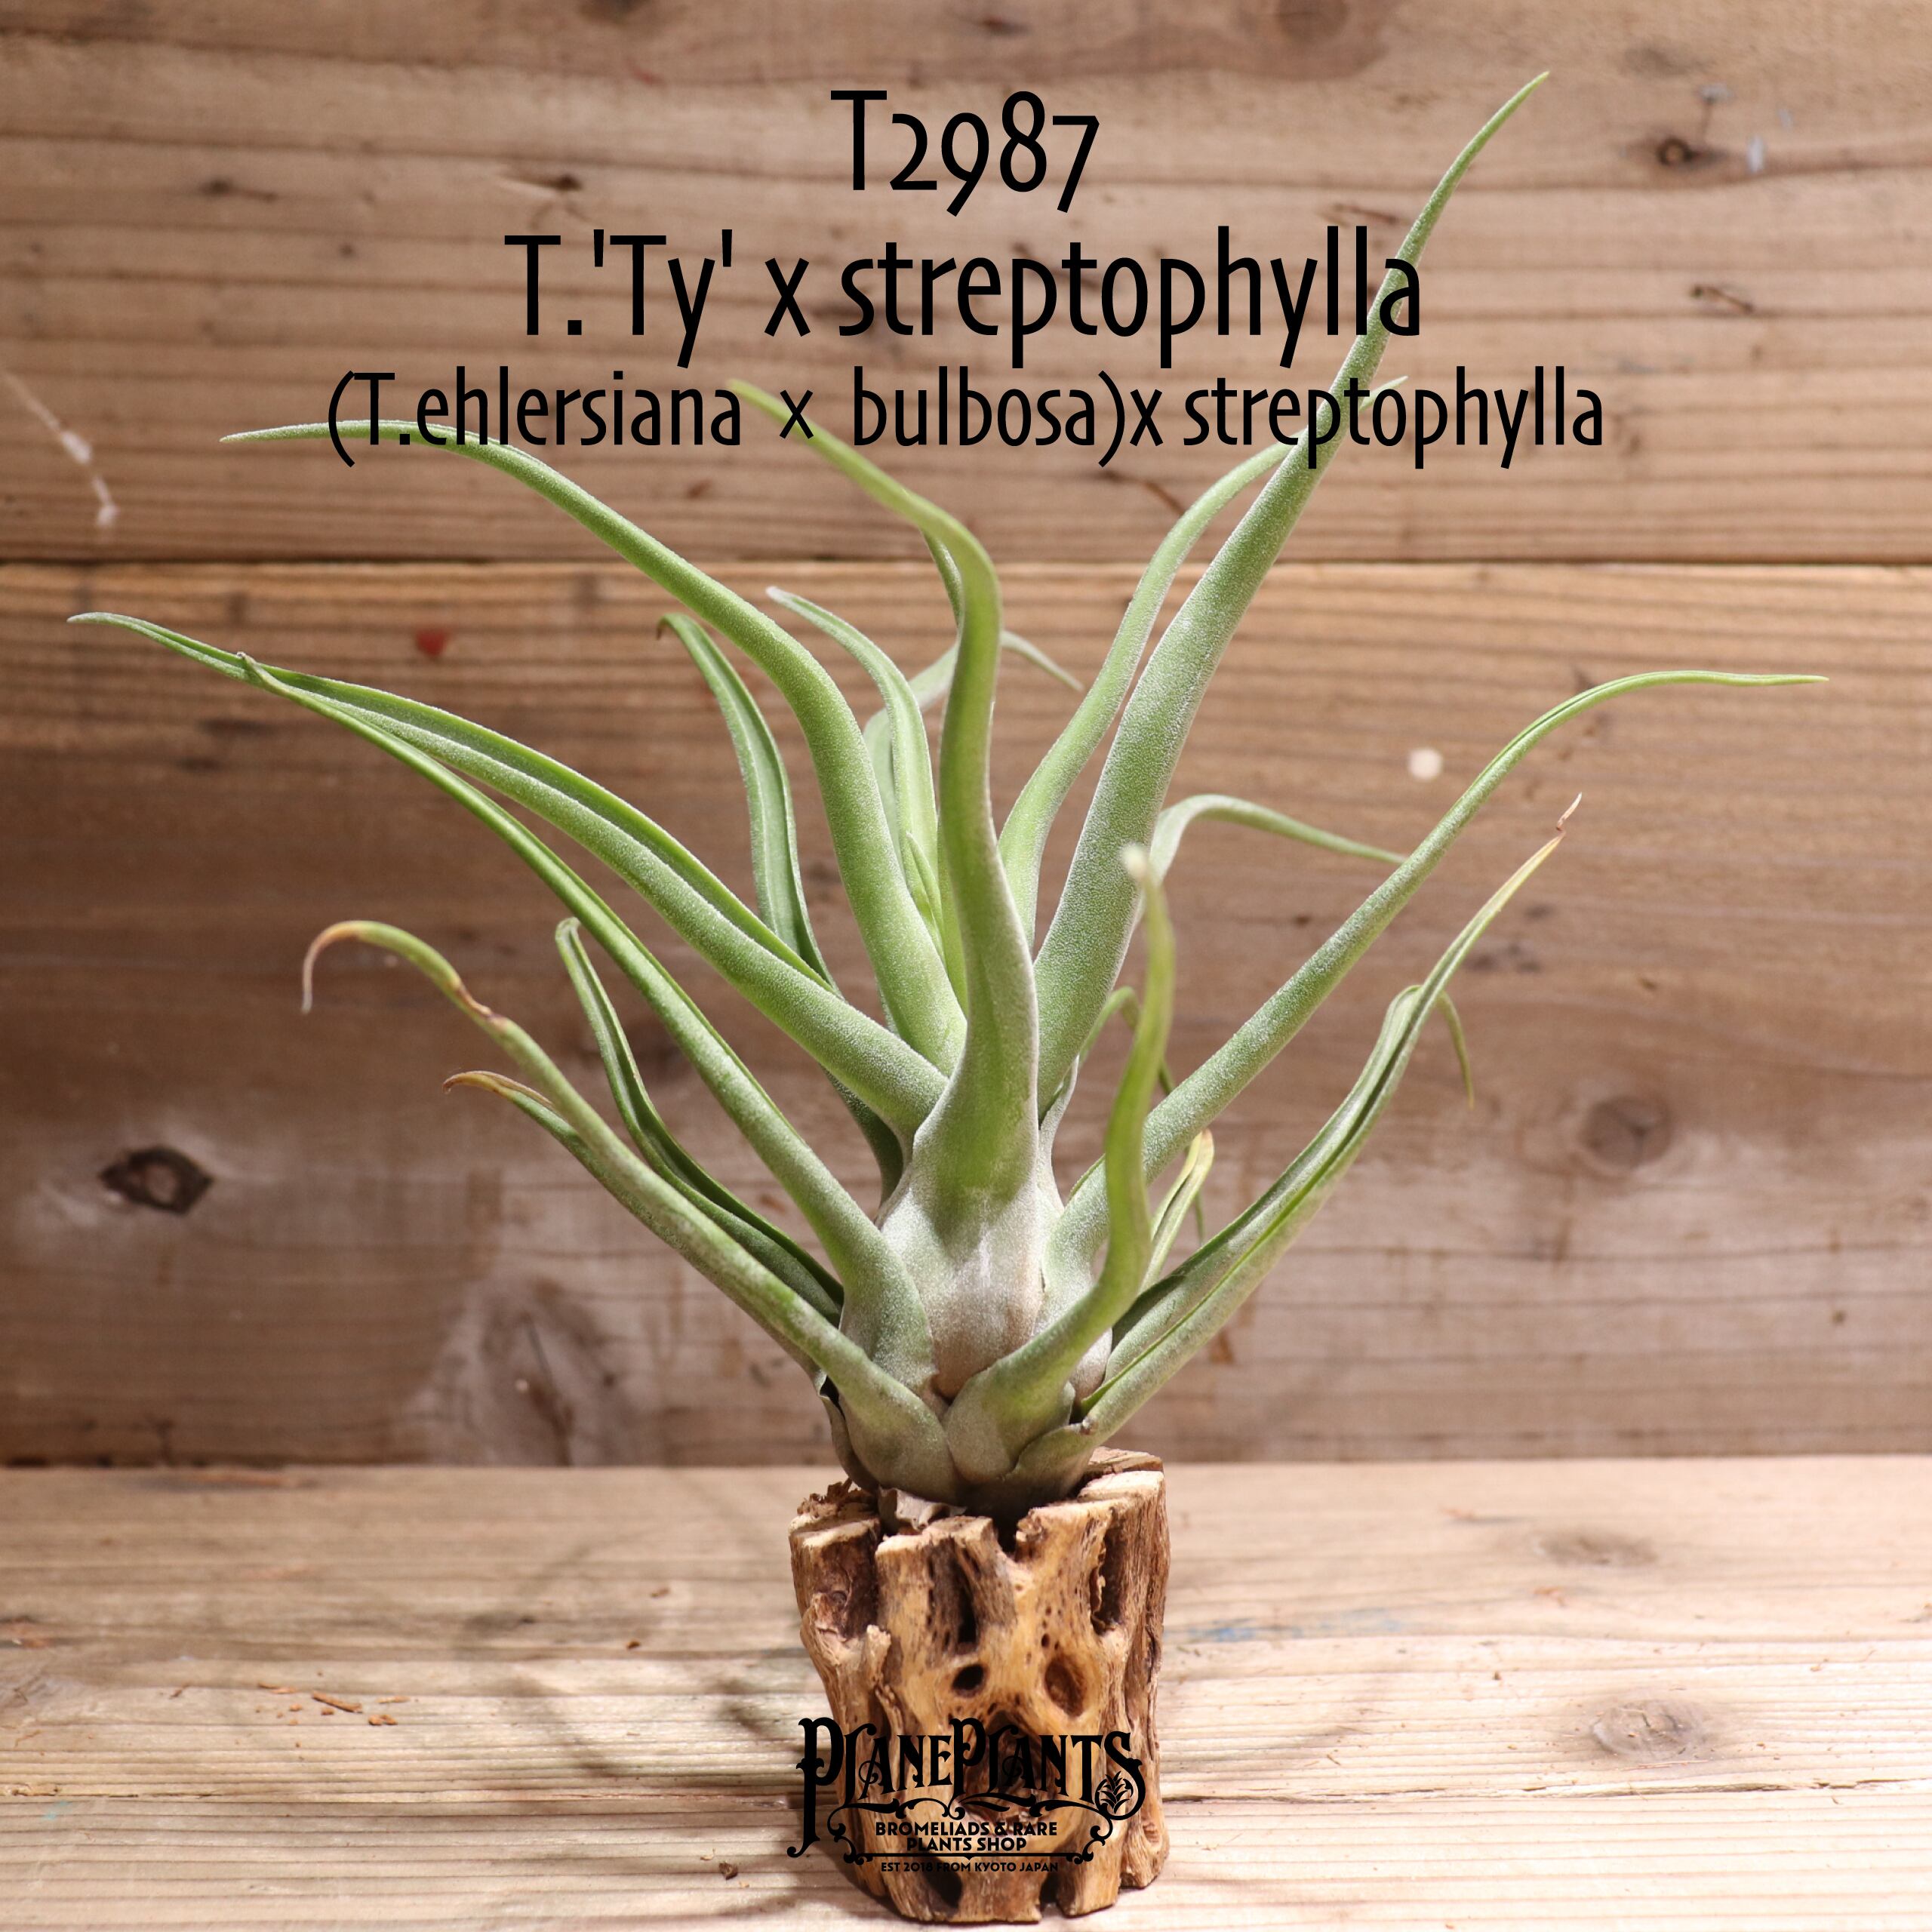 【送料無料】'Ty' x streptophylla〔エアプランツ〕現品発送T2987 | plane plants powered by BASE